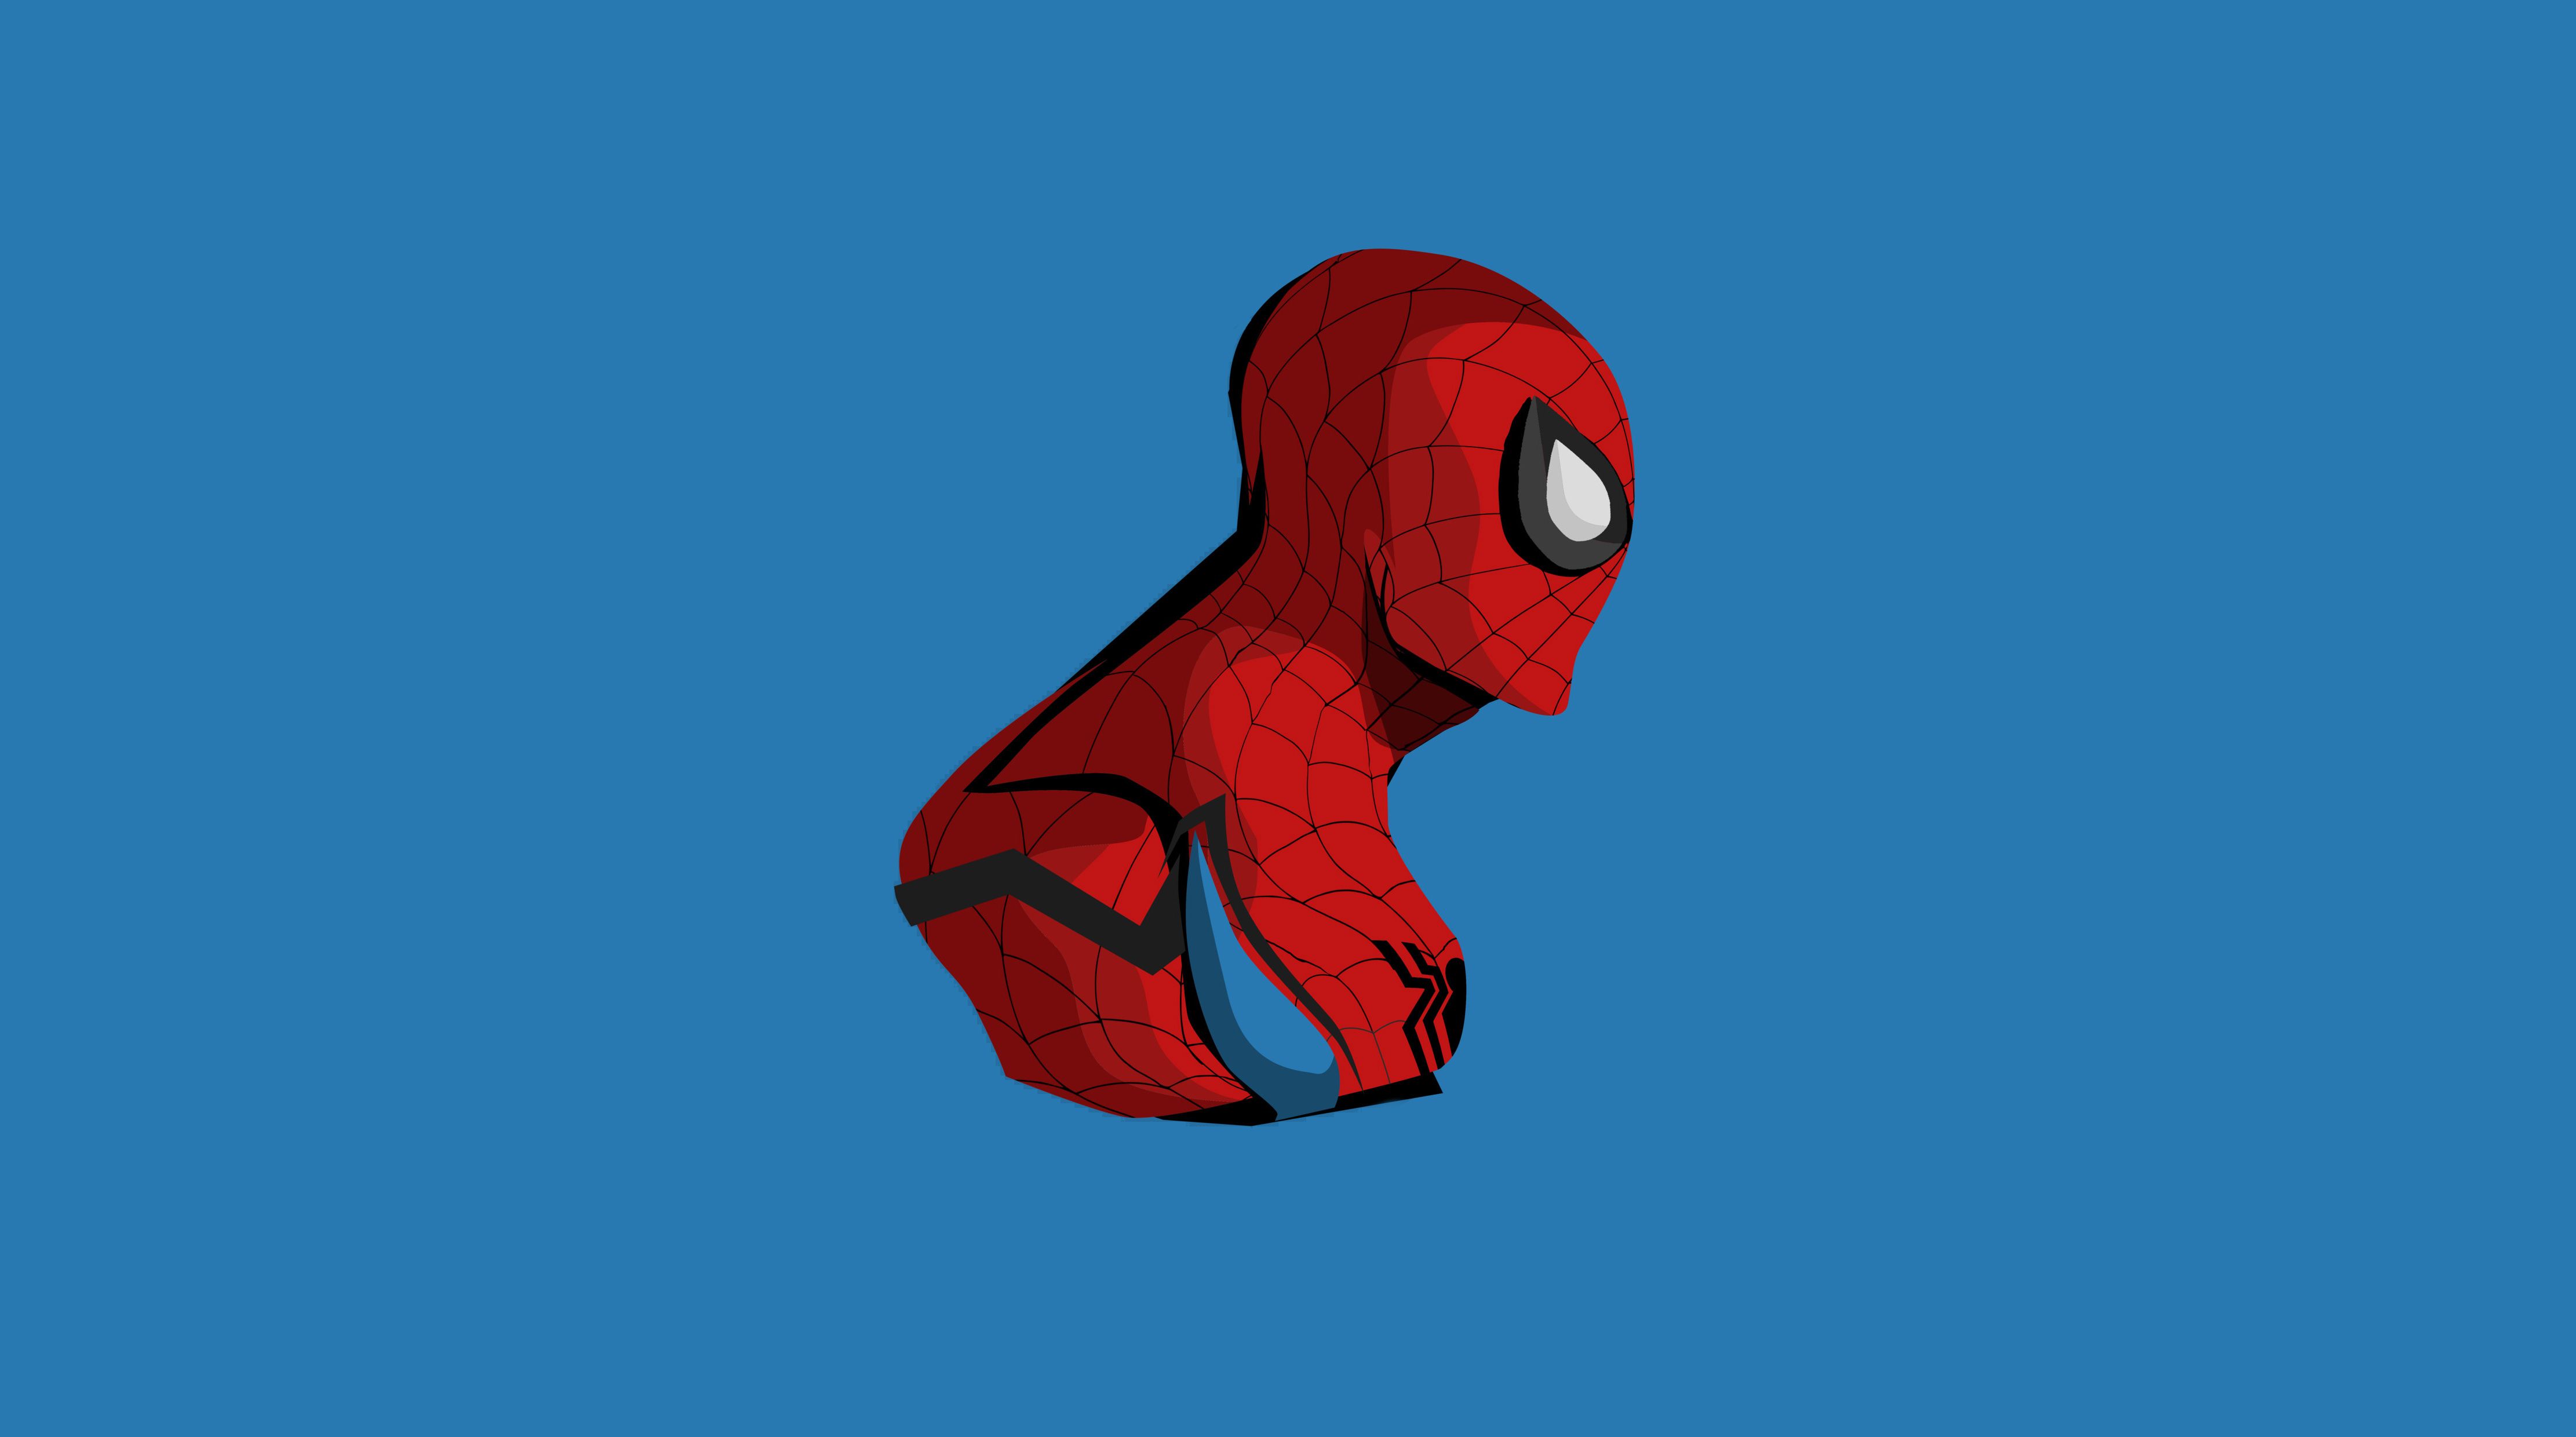 Spiderman 4k Minimalism, HD Superheroes, 4k Wallpaper, Image